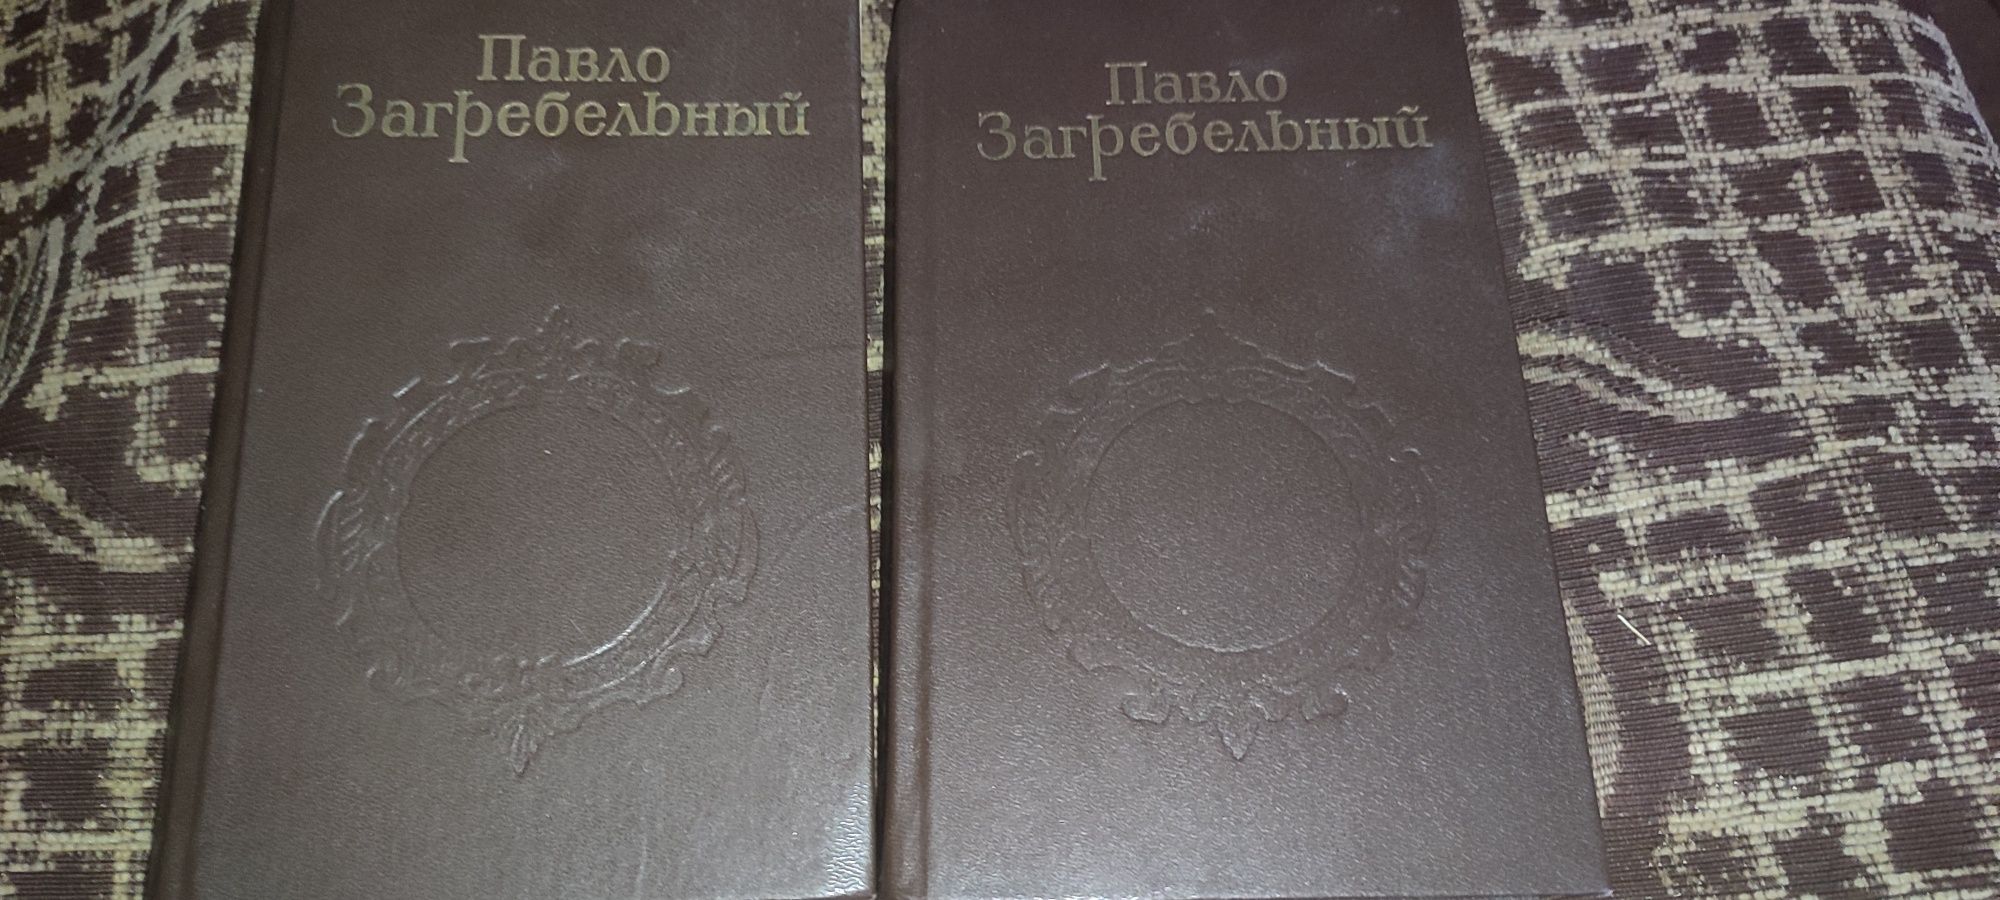 Павло Загребельный - 4 книги